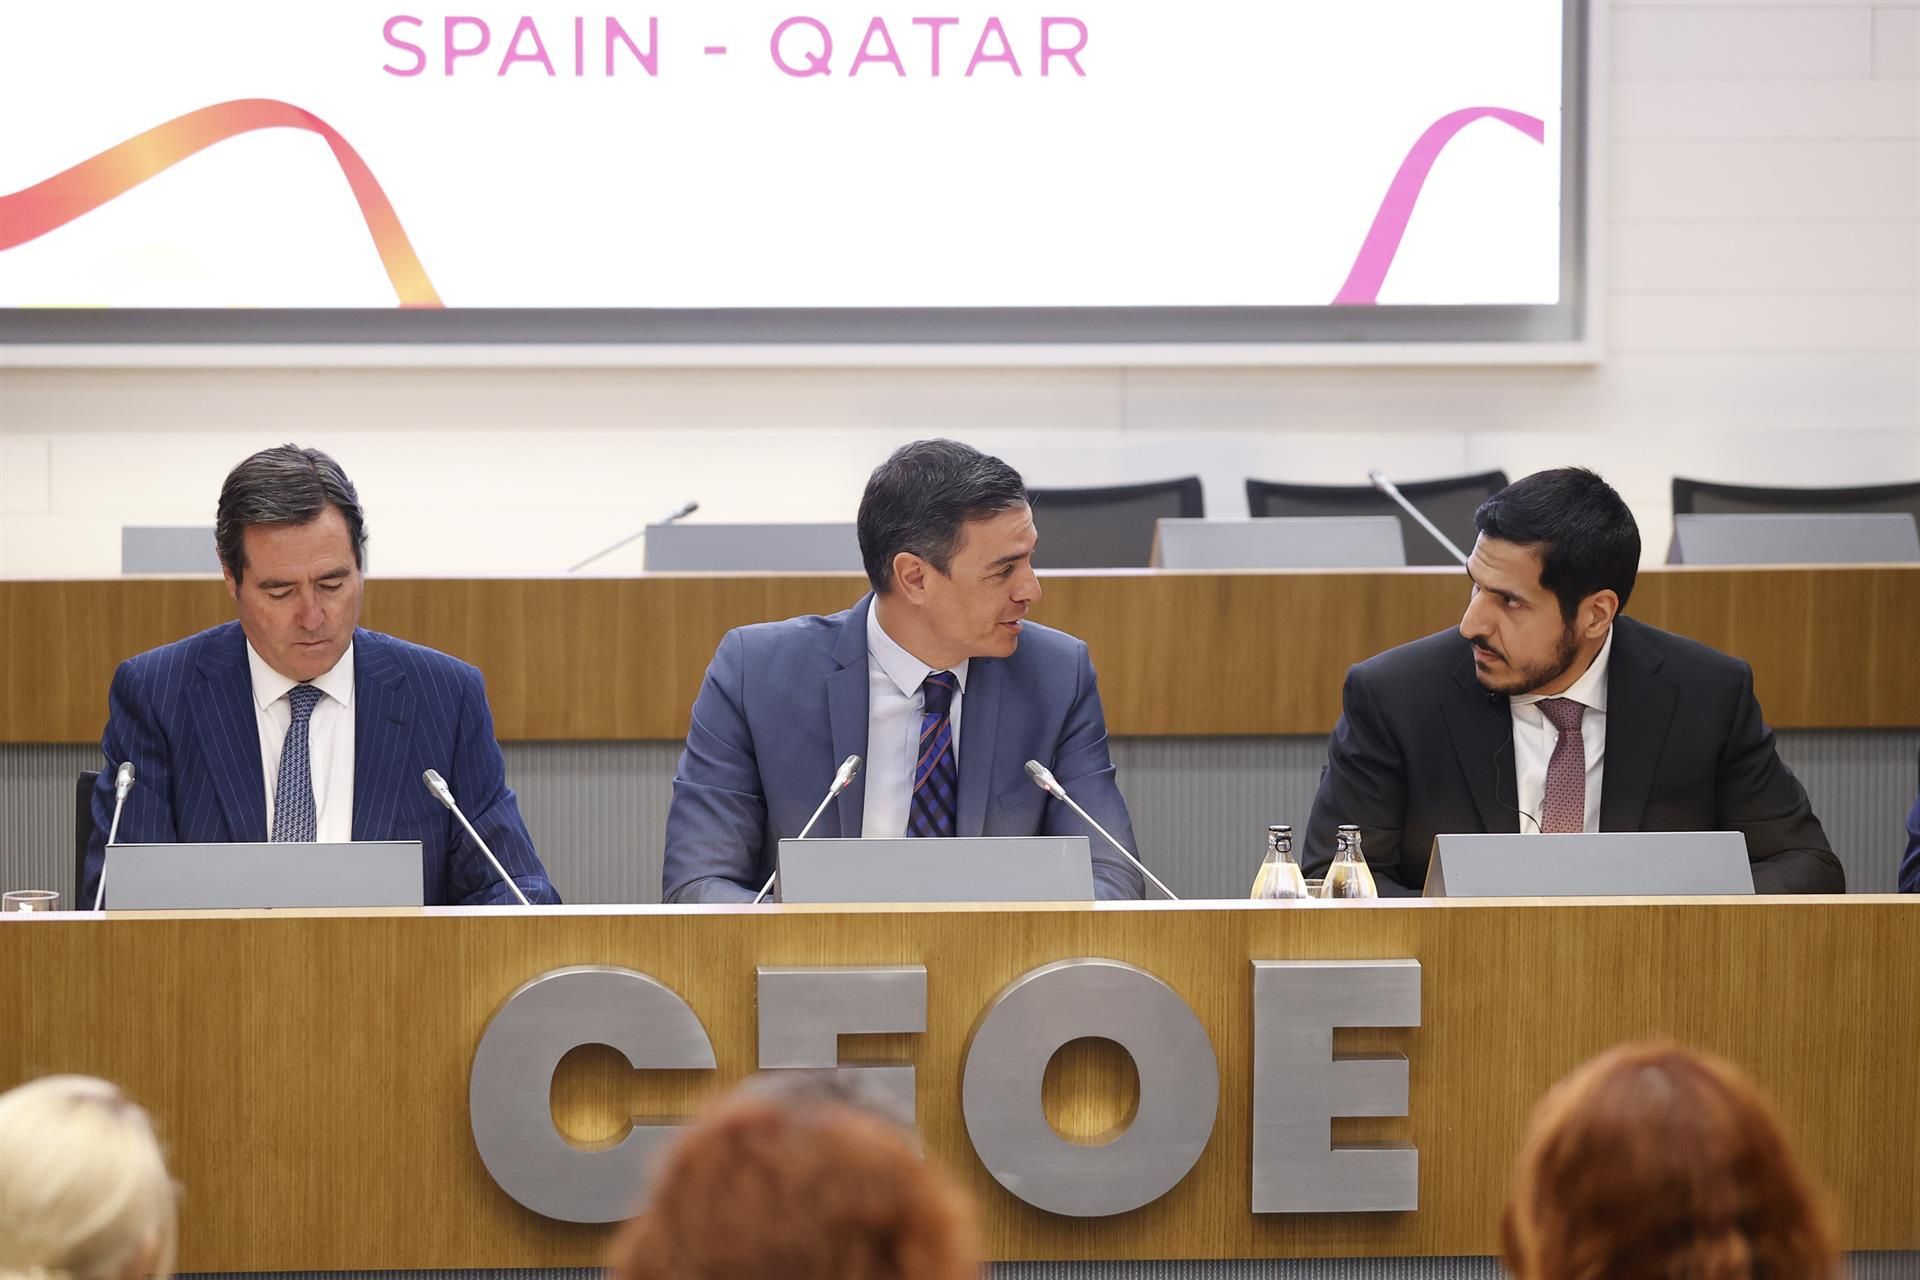 El presidente de la CEOE, Antonio Garamendi (i); el presidente del Gobierno, Pedro Sánchez (c), y el presidente de la Qatari Businessmen Association, H.E. Sheikh Faisal Bin Qassim Al-Thani (d), durante el acto inaugural del foro empresarial España-Qatar, celebrado en el marco de la visita de Estado del emir de Qatar, Tamim bin Hamad Al-Thani, este miércoles en Madrid. EFE/ Chema Moya
